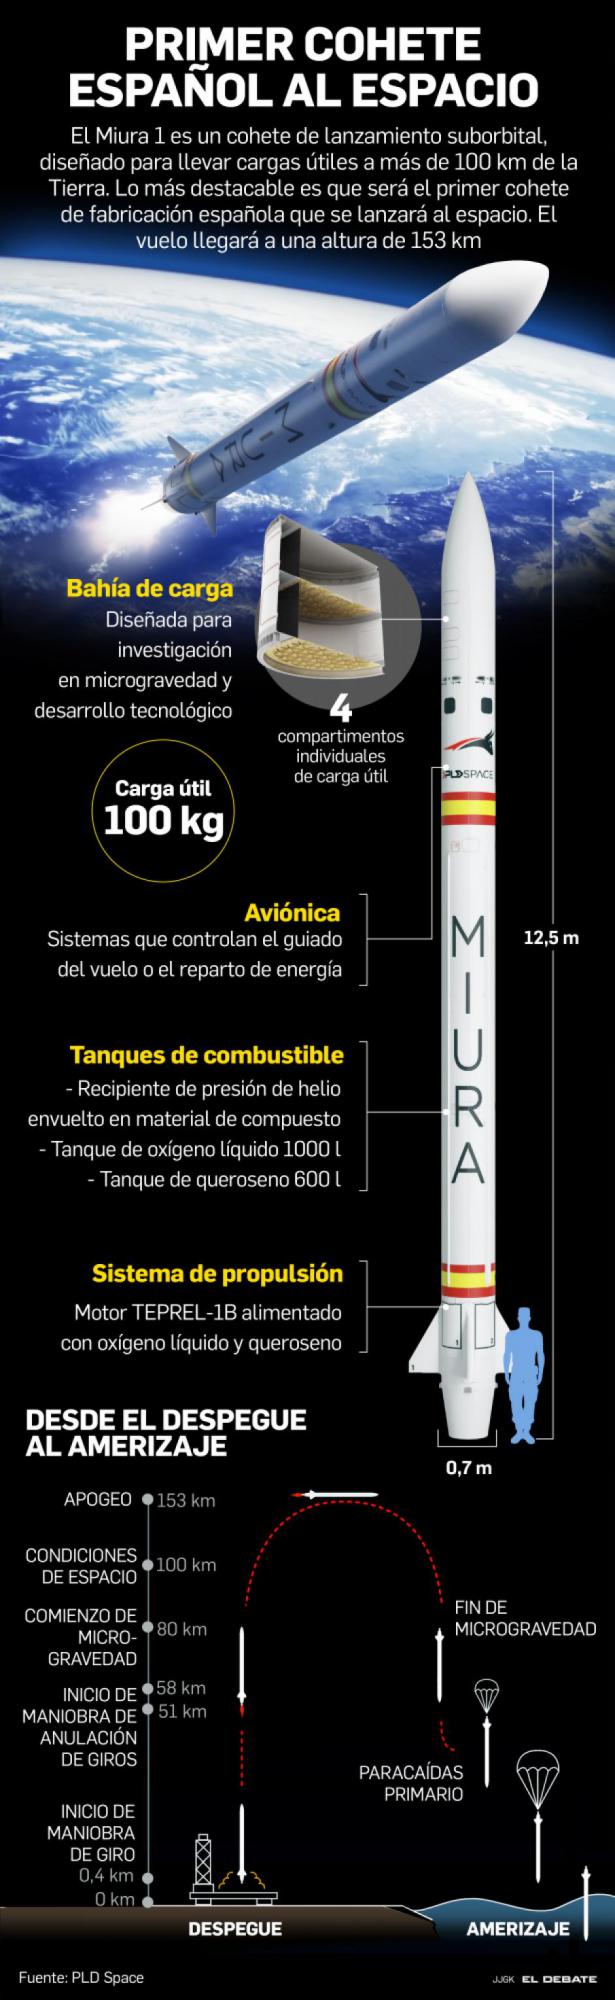 El lanzamiento del primer cohete 100% español ha sido un éxito esta madrugada